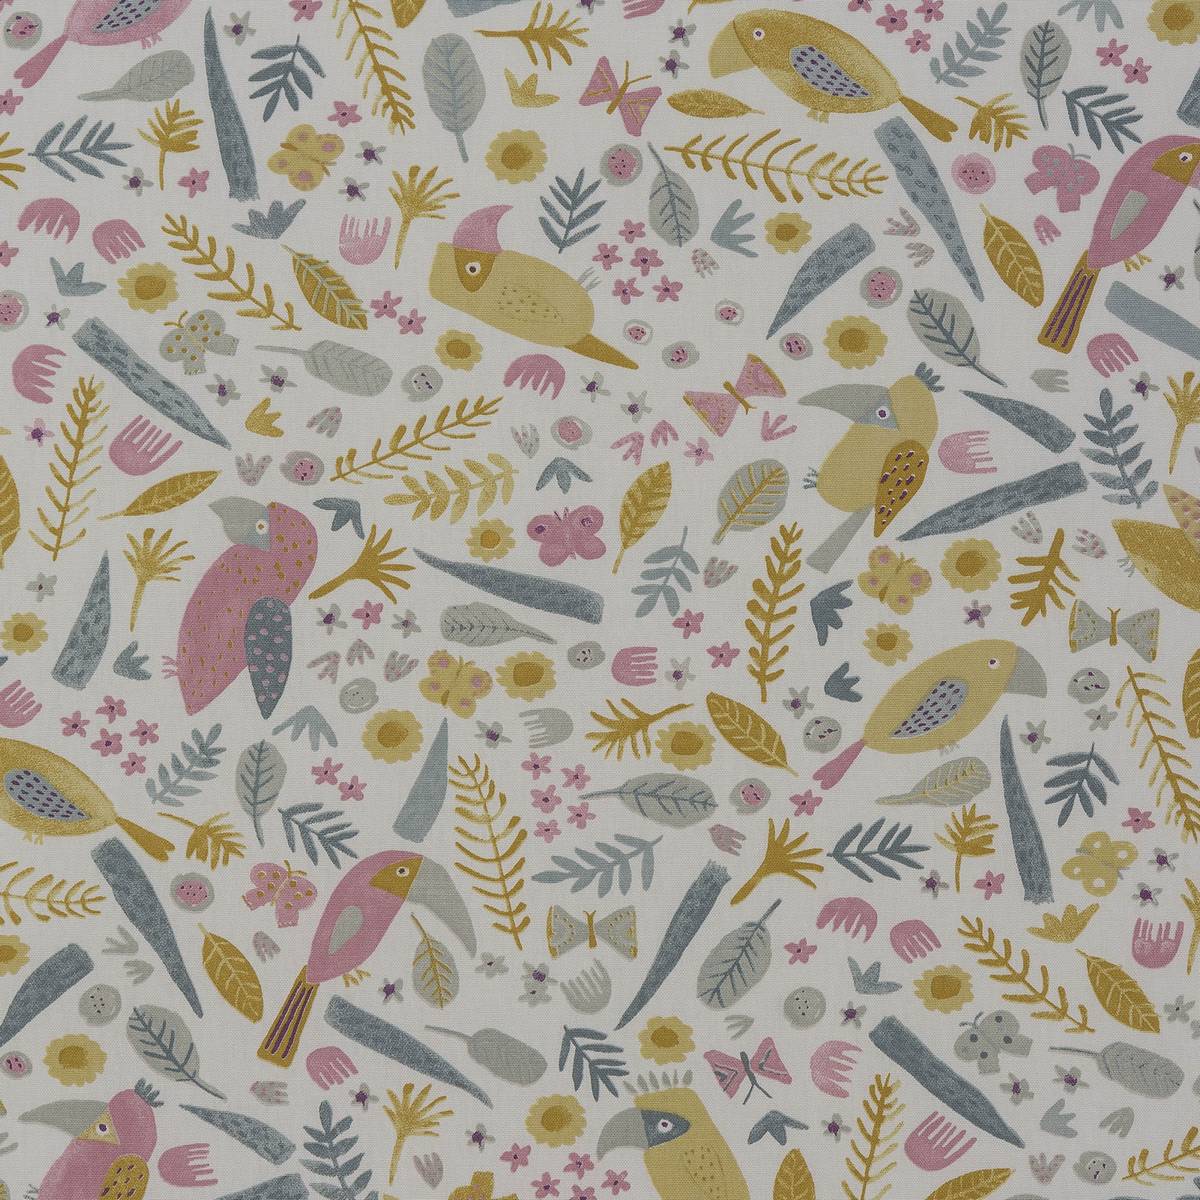 Toucan Carnival Fabric by Fryetts